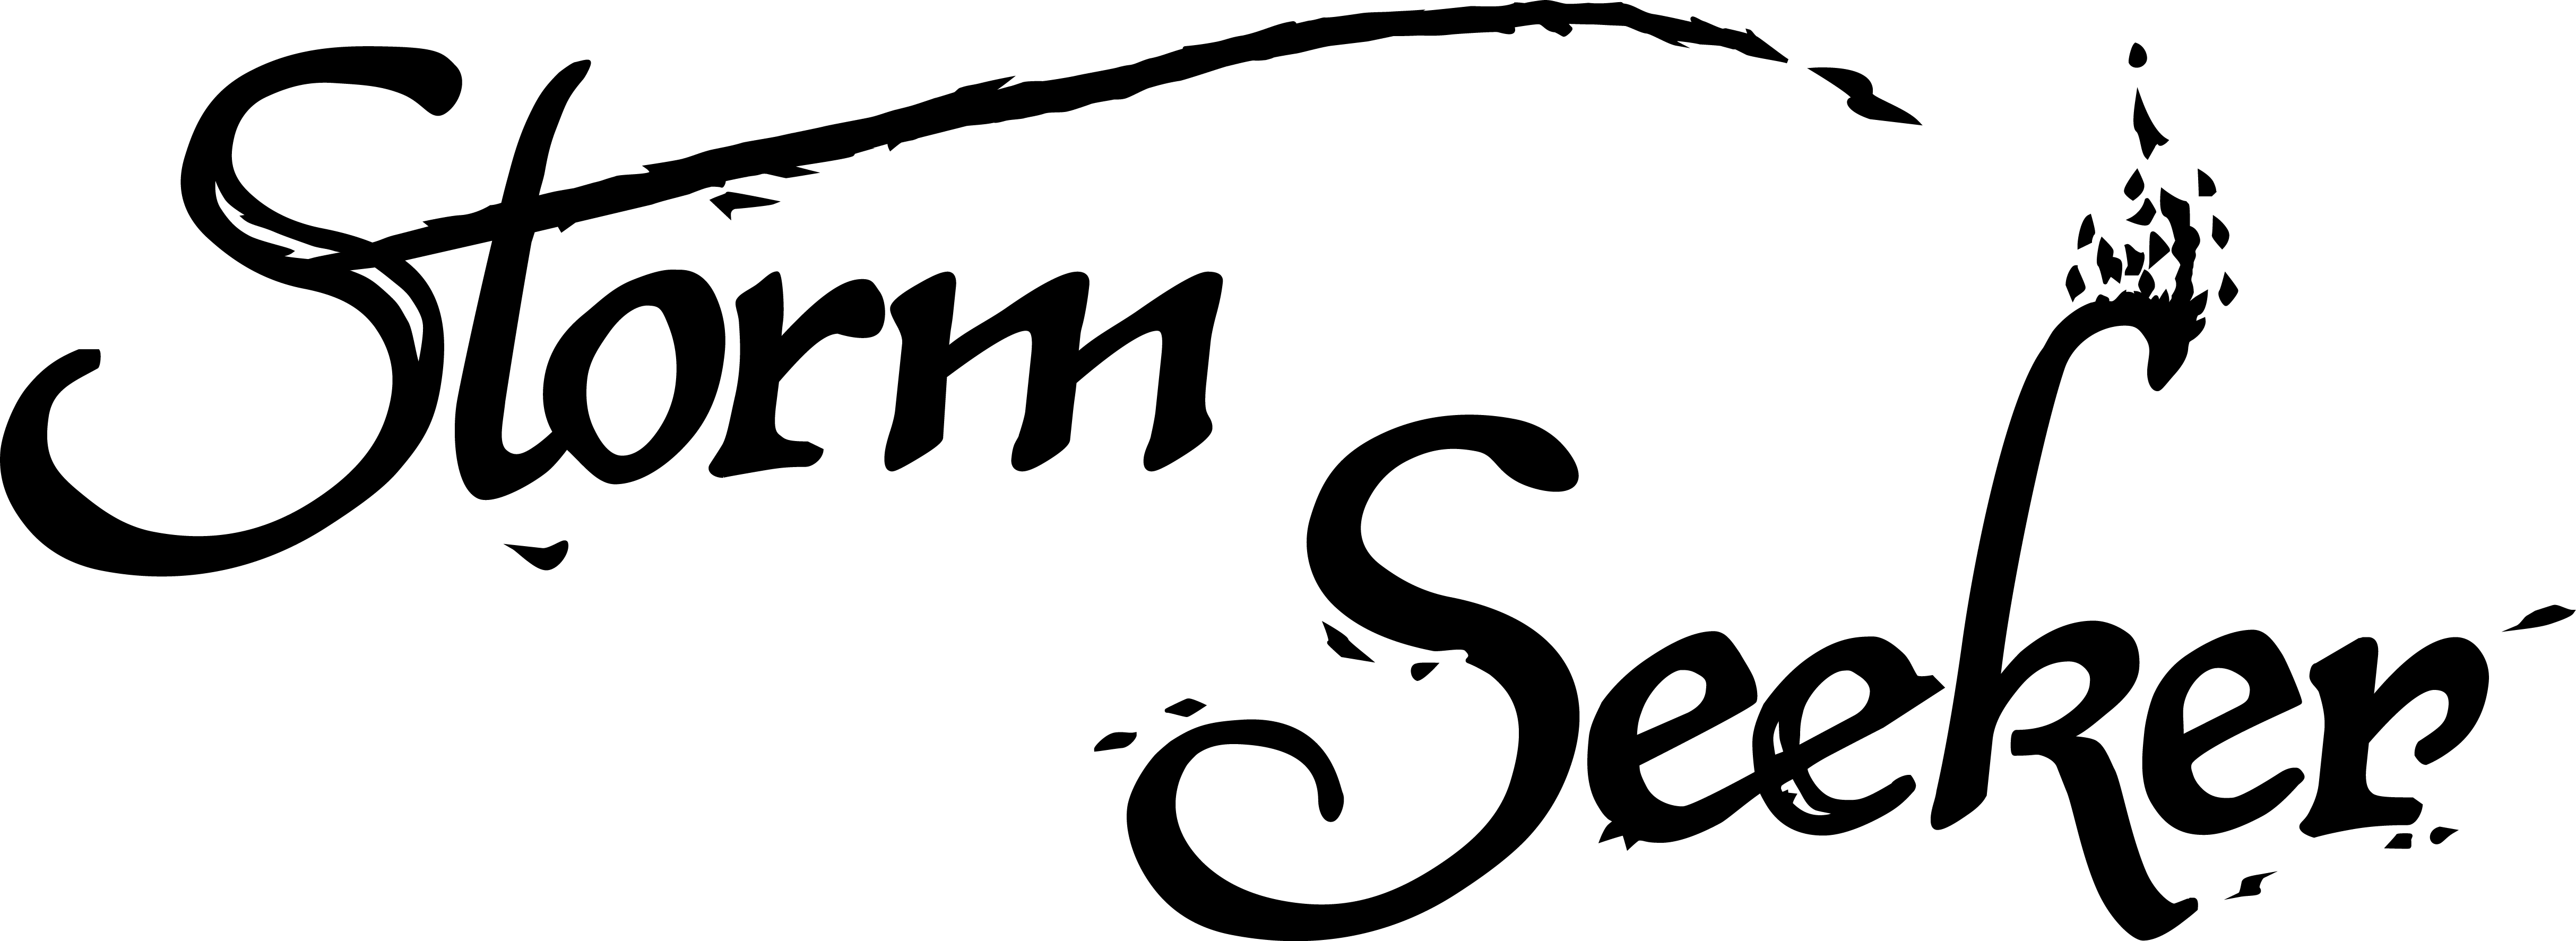 Seeker Logo - Storm Seeker